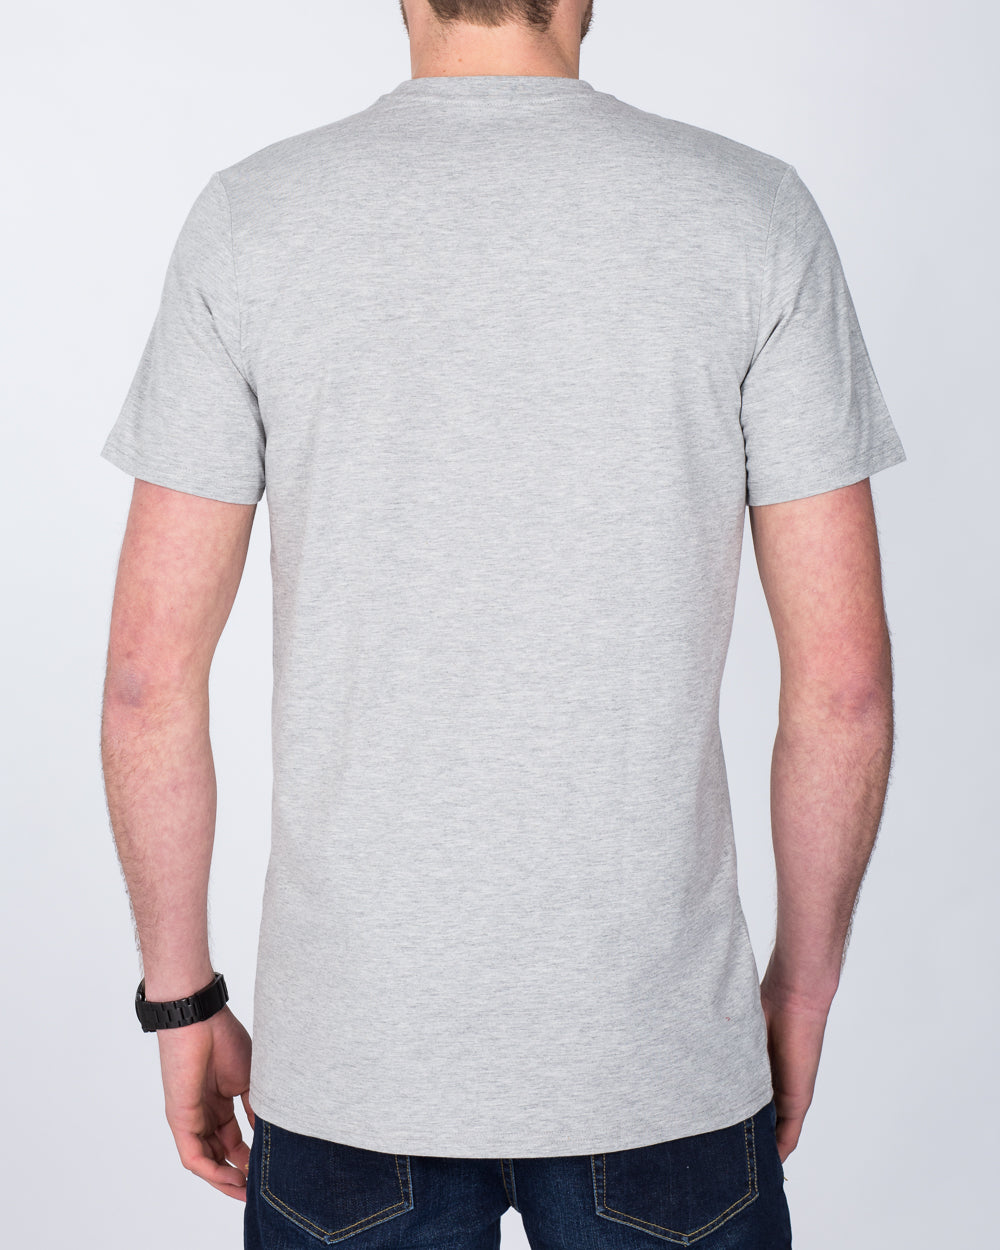 Girav Sydney Tall T-Shirt (grey)